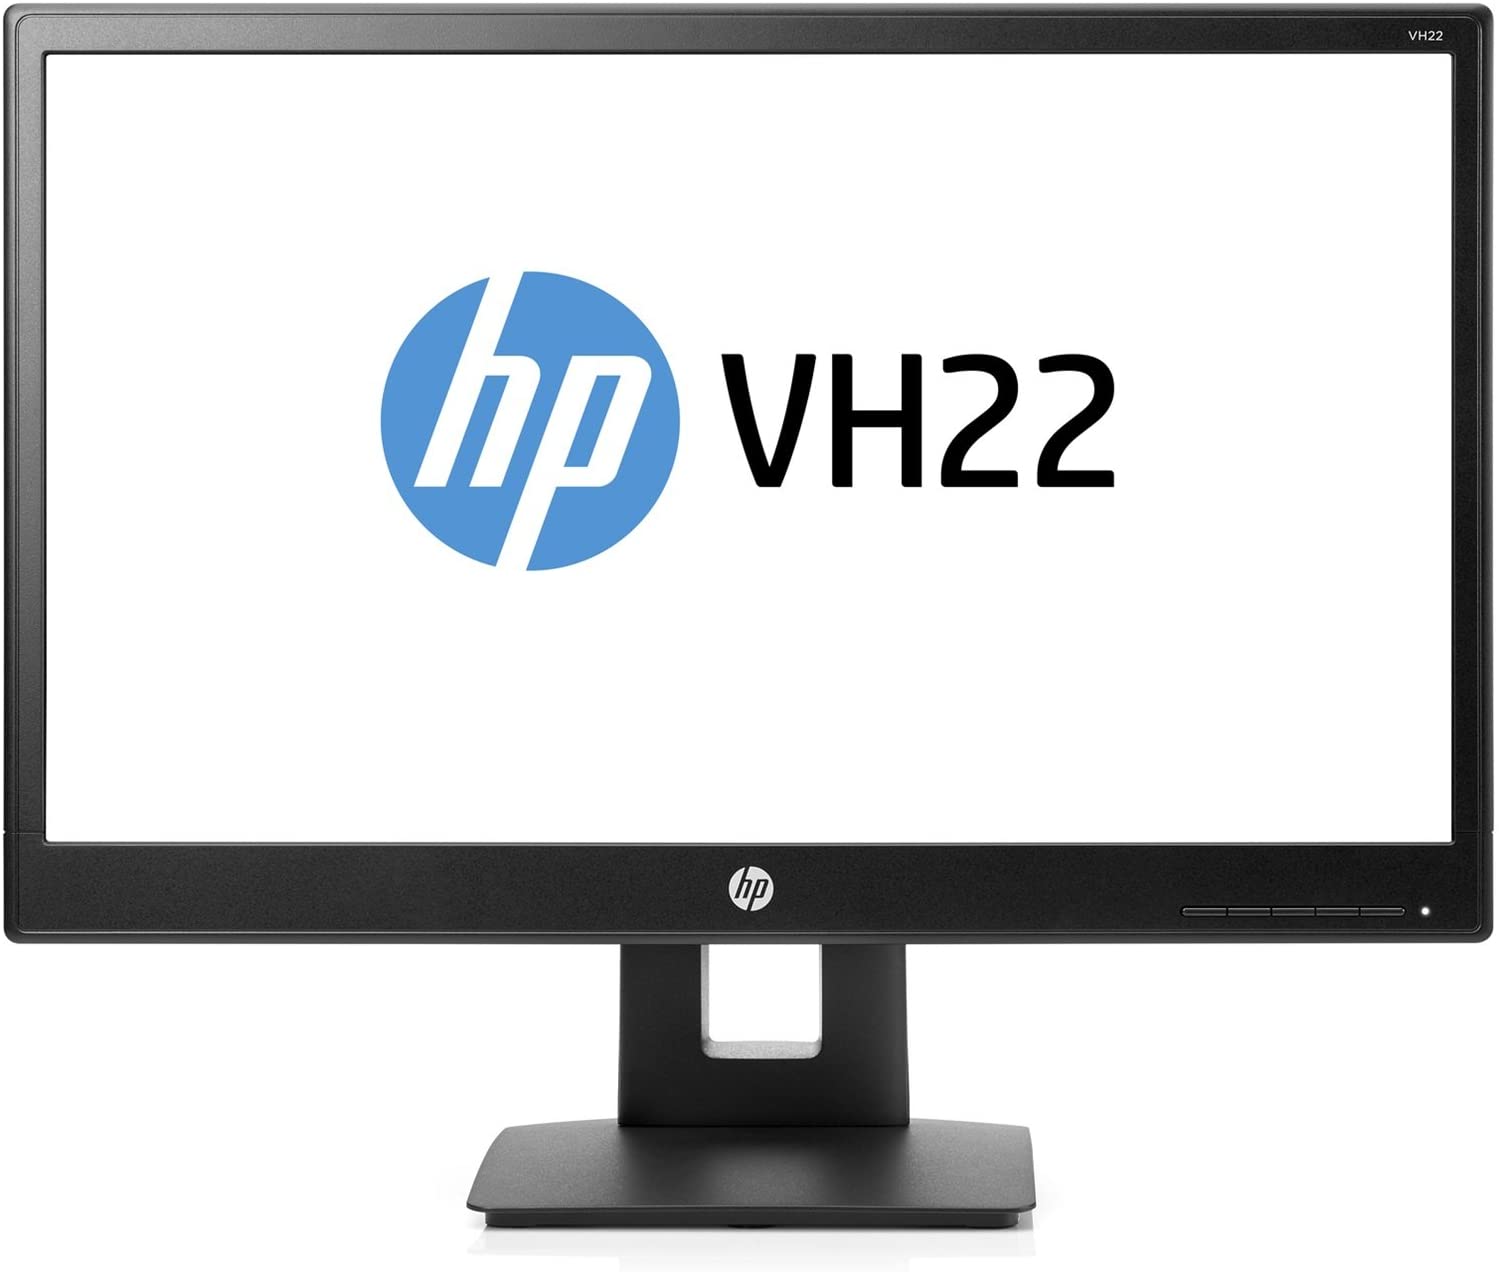 HP VH22 نمایشگر